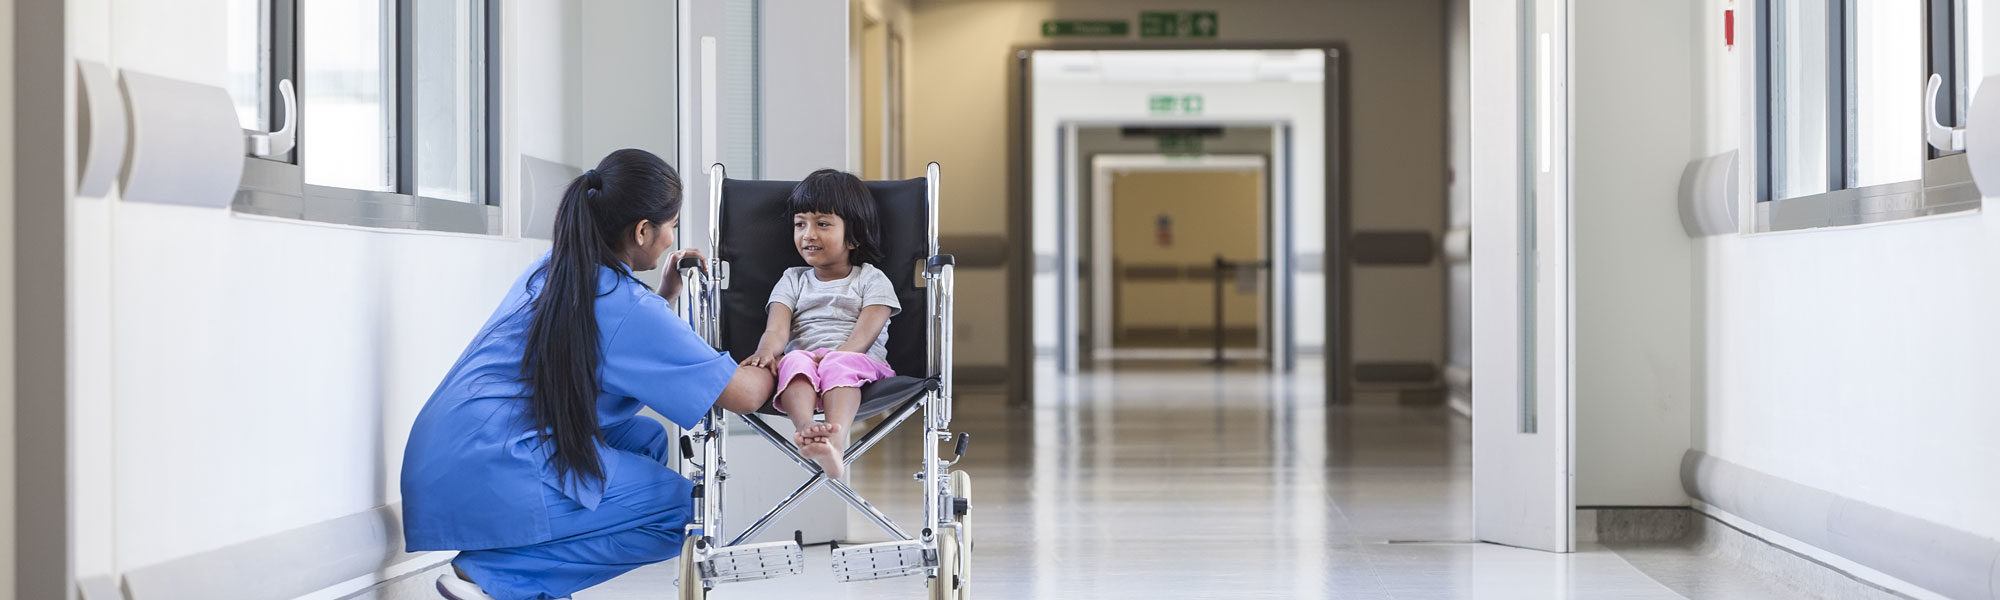 Child in wheelchair with nurse